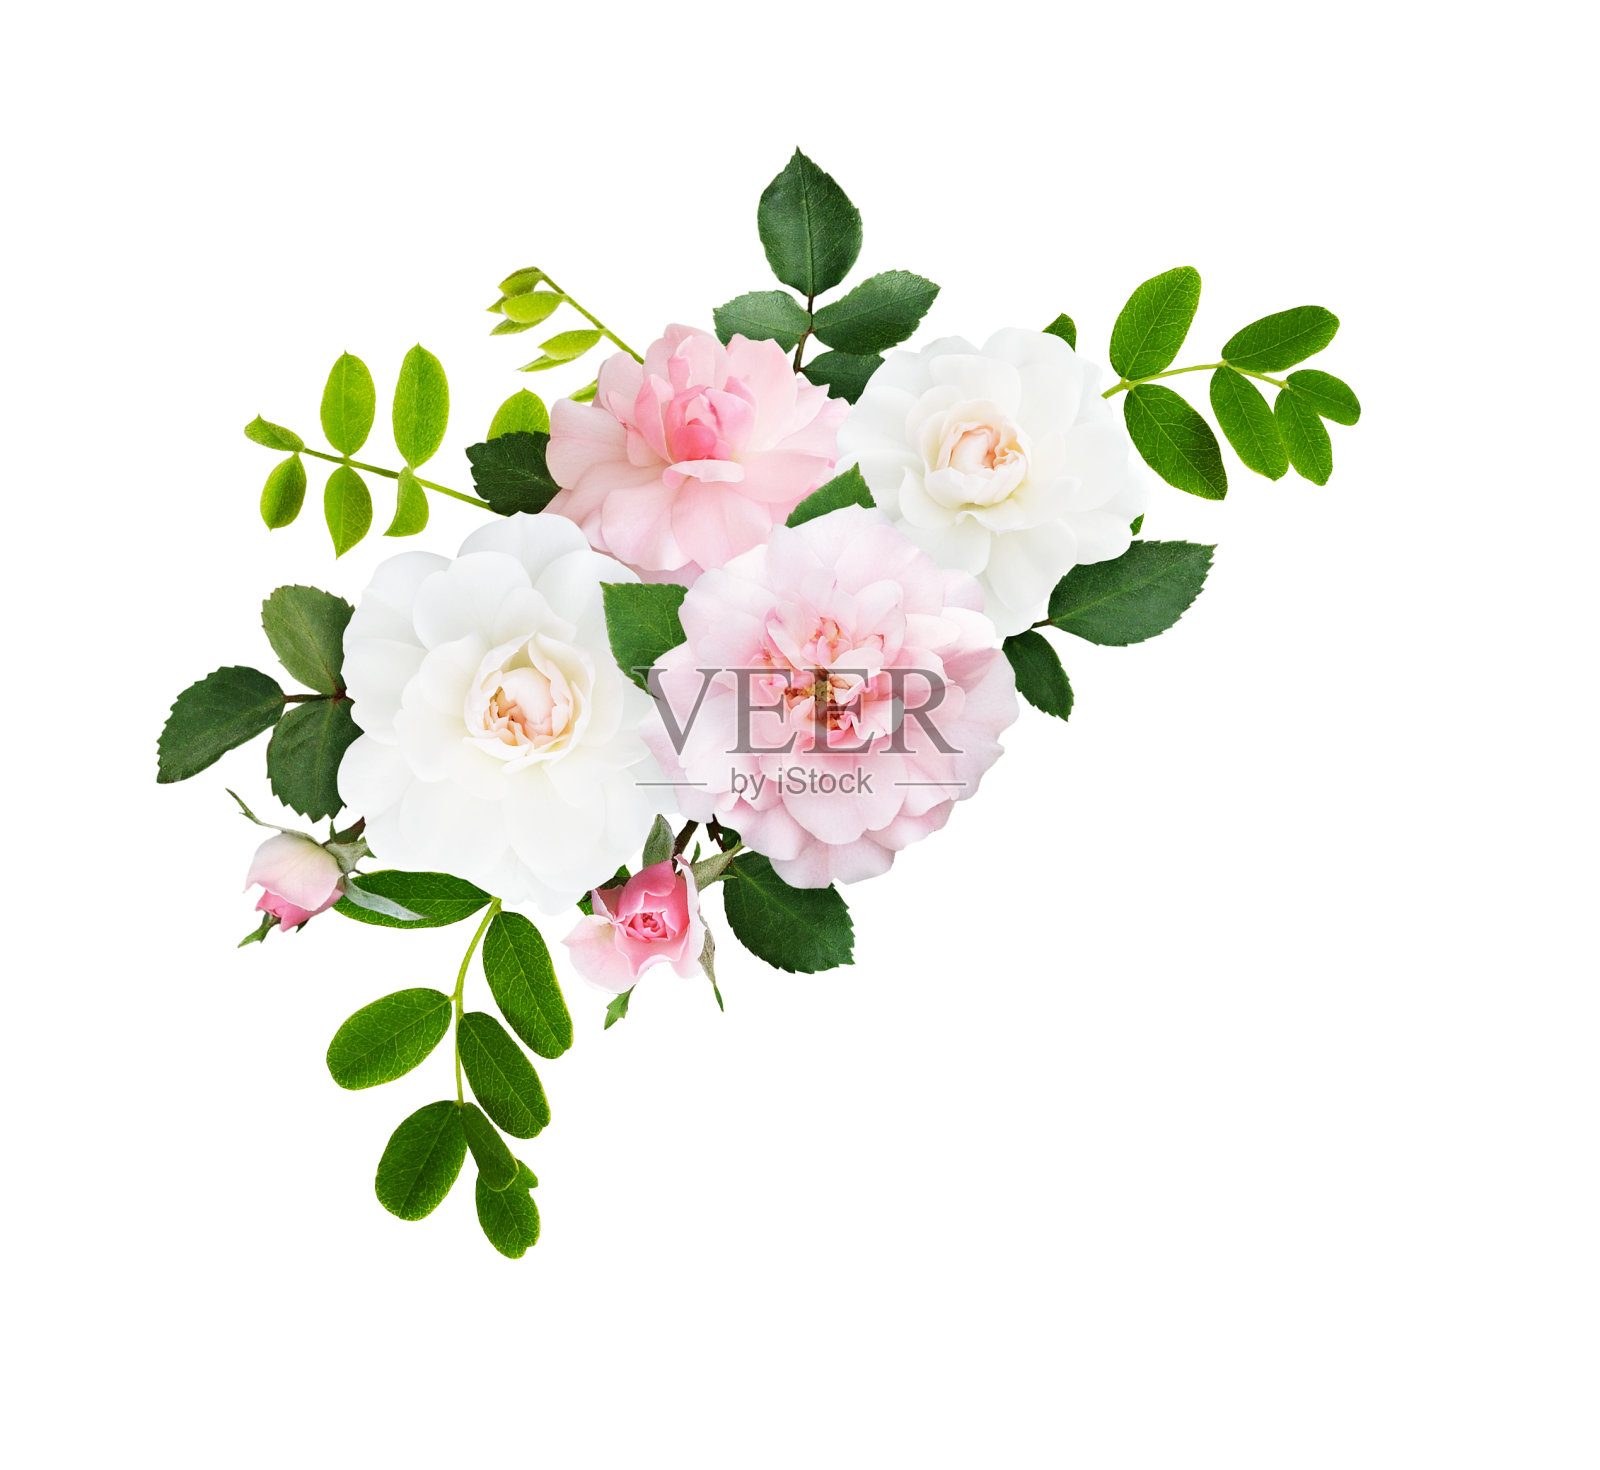 粉红色和白色的玫瑰花和花蕾在角落里排列照片摄影图片